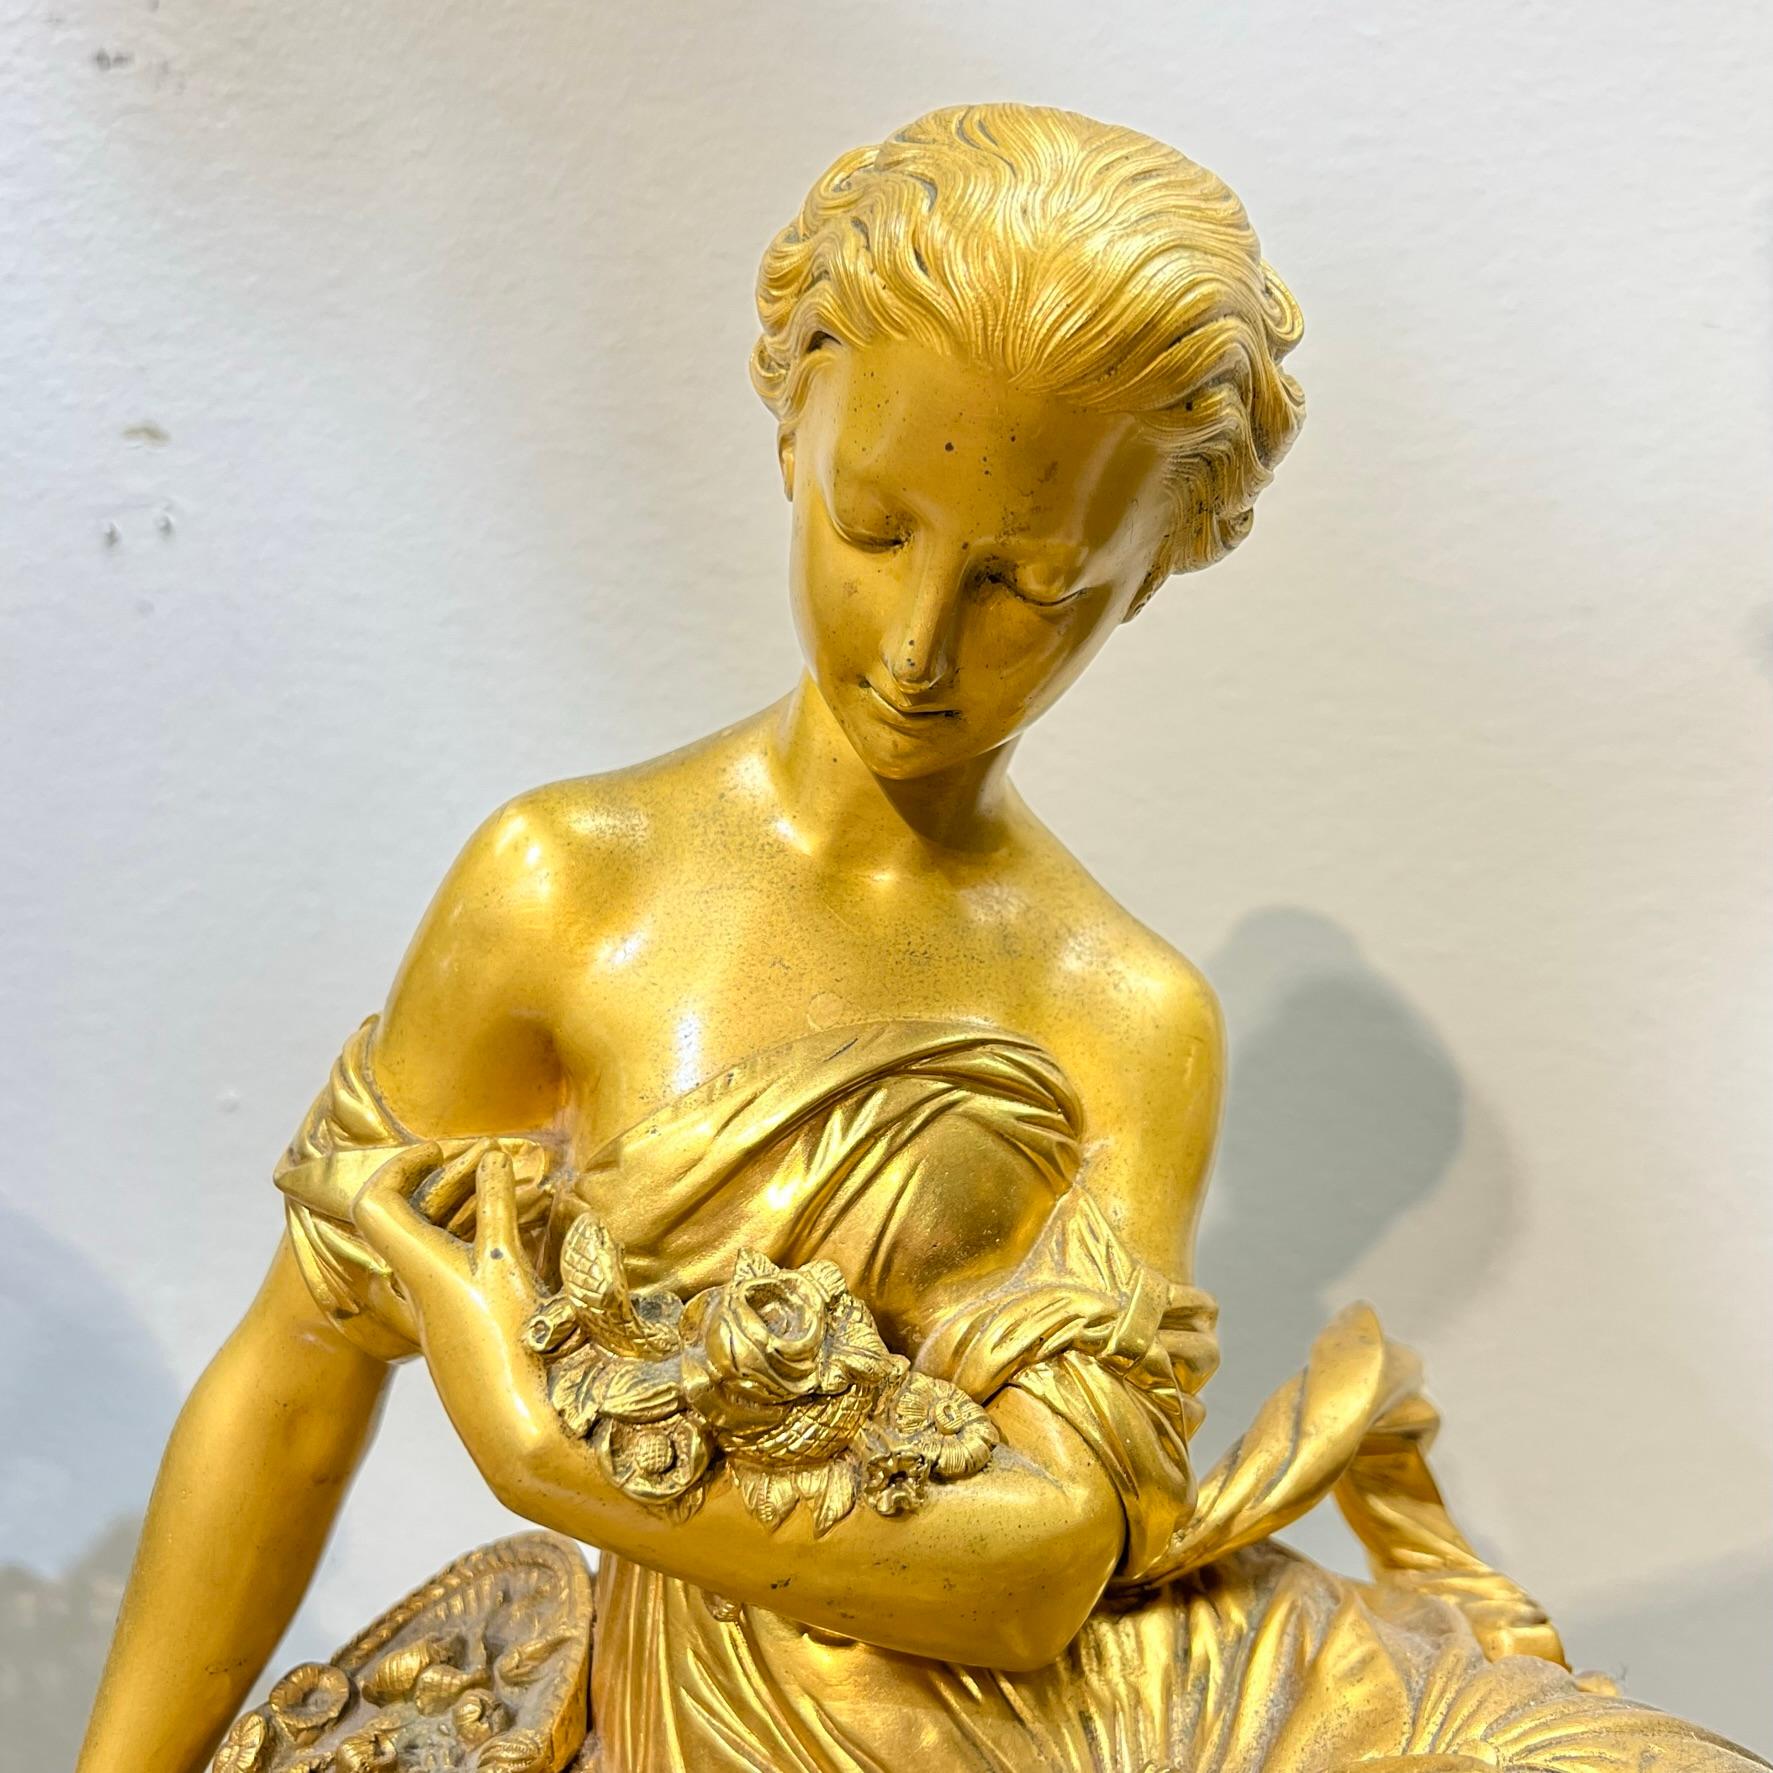 Unsere schöne Kaminsimsuhr aus vergoldeter Bronze mit Uhrwerk von Raingo Freres aus Paris zeigt die fein gearbeitete Figur einer schönen Frau, die sich um ein neugeborenes Küken kümmert.

Mit originalem Pendel und Glocke und in einwandfreiem Zustand.